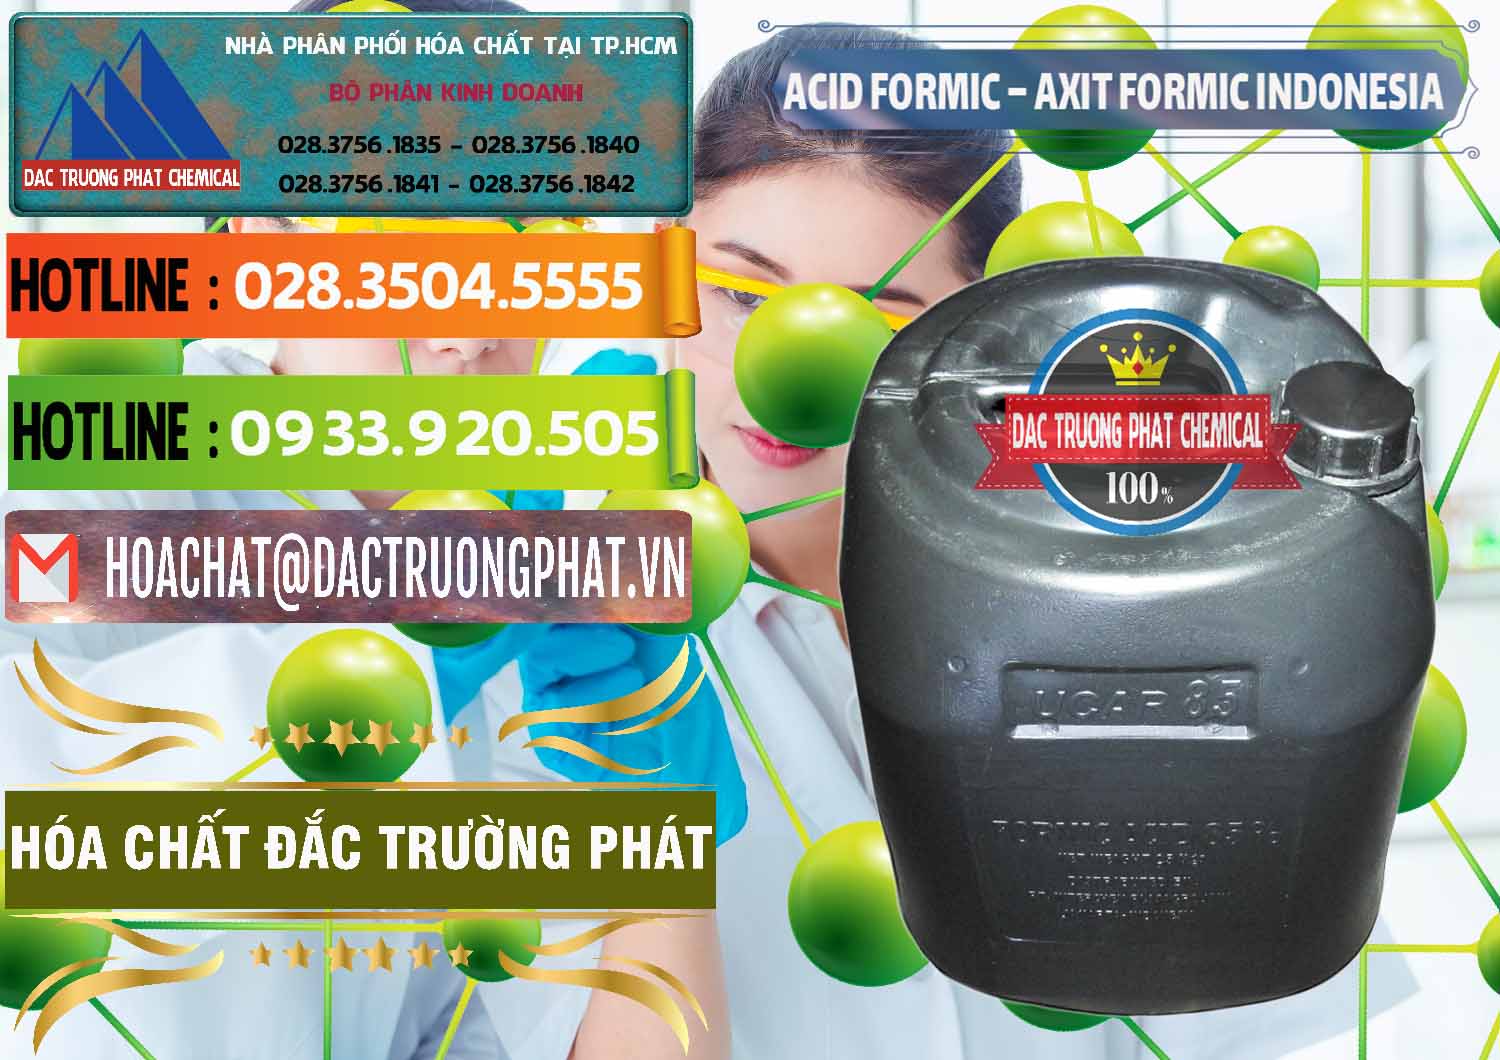 Chuyên kinh doanh _ bán Acid Formic - Axit Formic Indonesia - 0026 - Cty chuyên kinh doanh ( cung cấp ) hóa chất tại TP.HCM - cungcaphoachat.com.vn